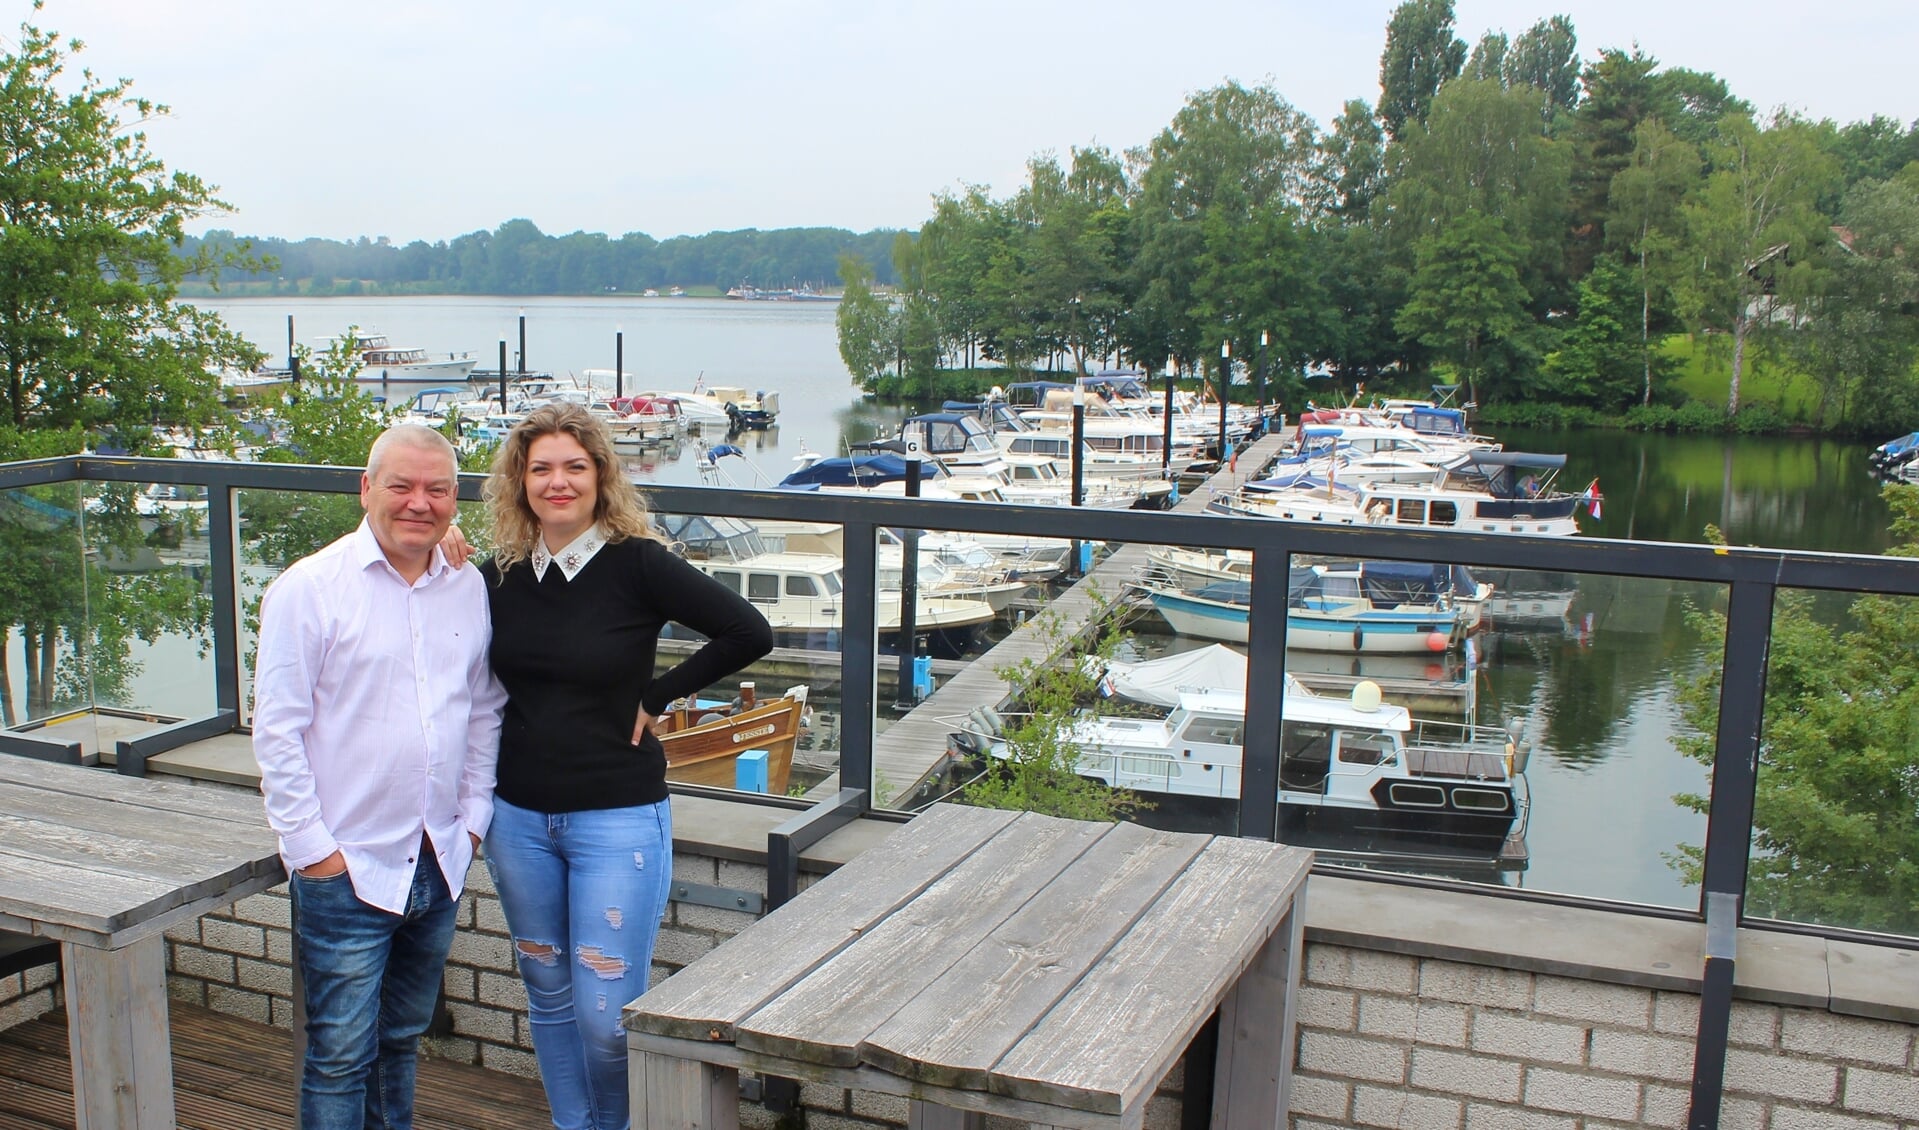 Chantal Faas samen met haar vader Kees ophet buitenterras met prachtig uitzicht. (foto: Ilona Kuster)